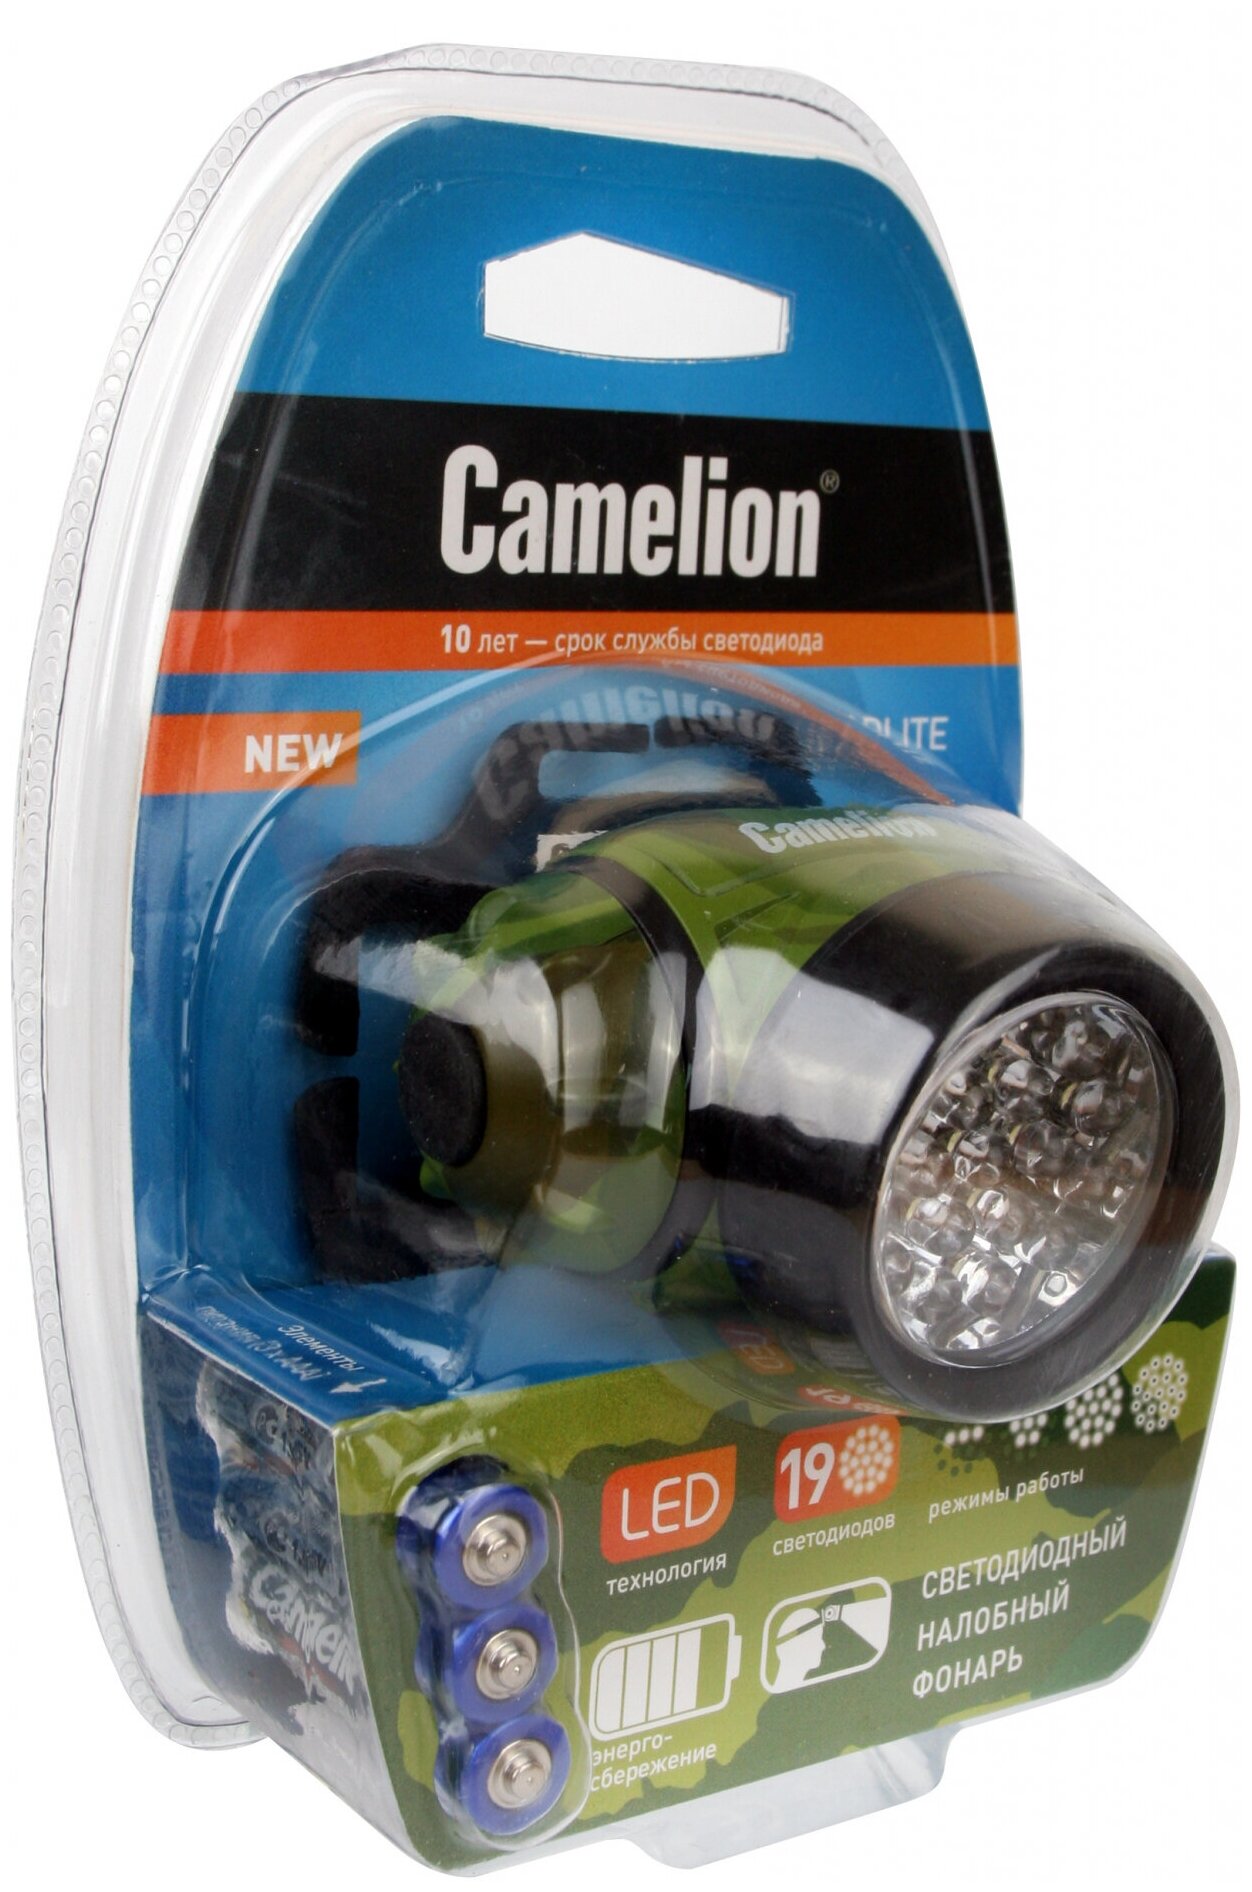 Налобный фонарь Camelion - фото №7